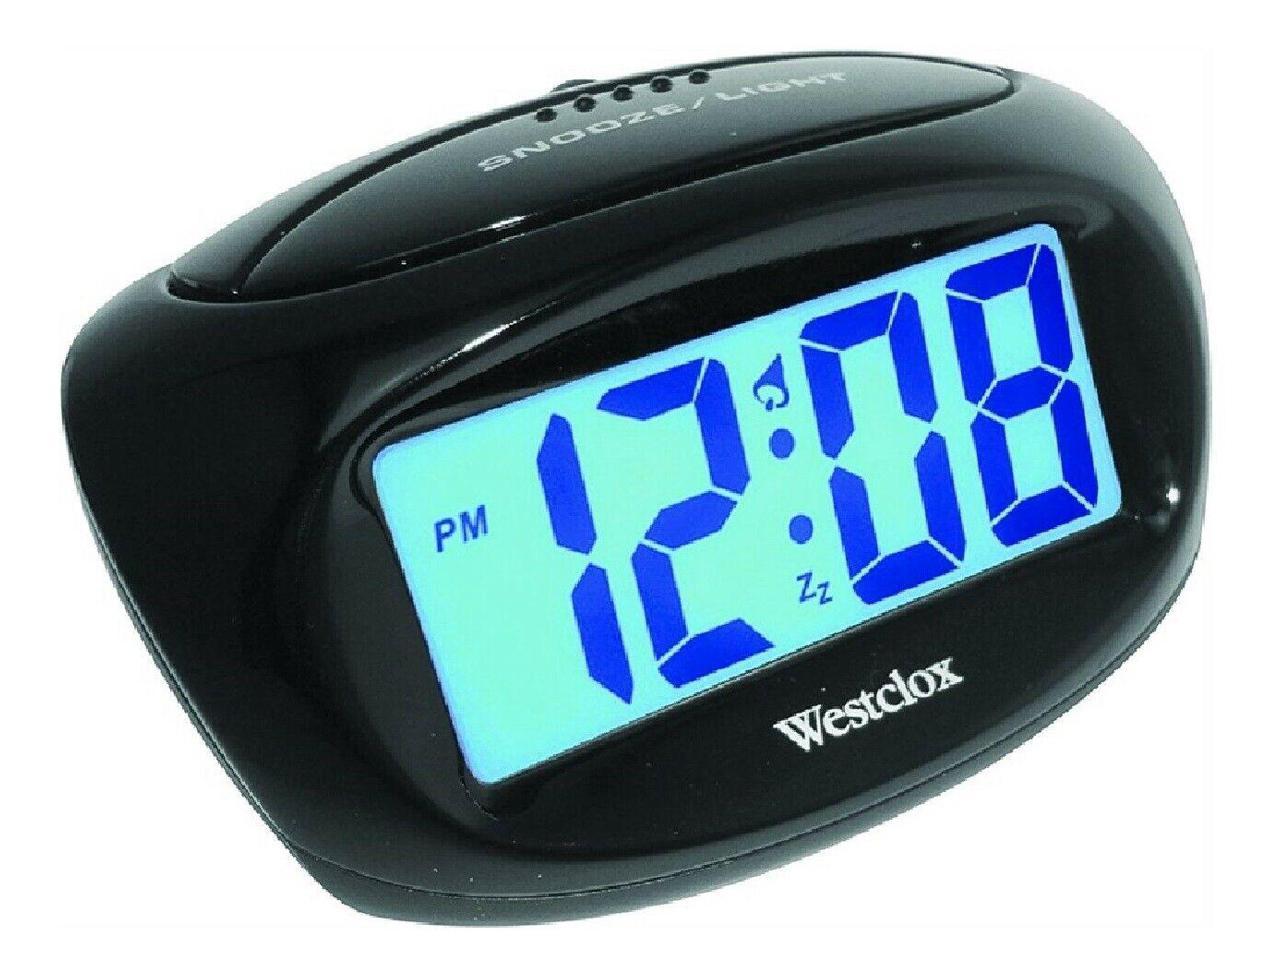 WESTCLOX BLUETOOTH DIGITAL CLOCK RADIO 81012BT 